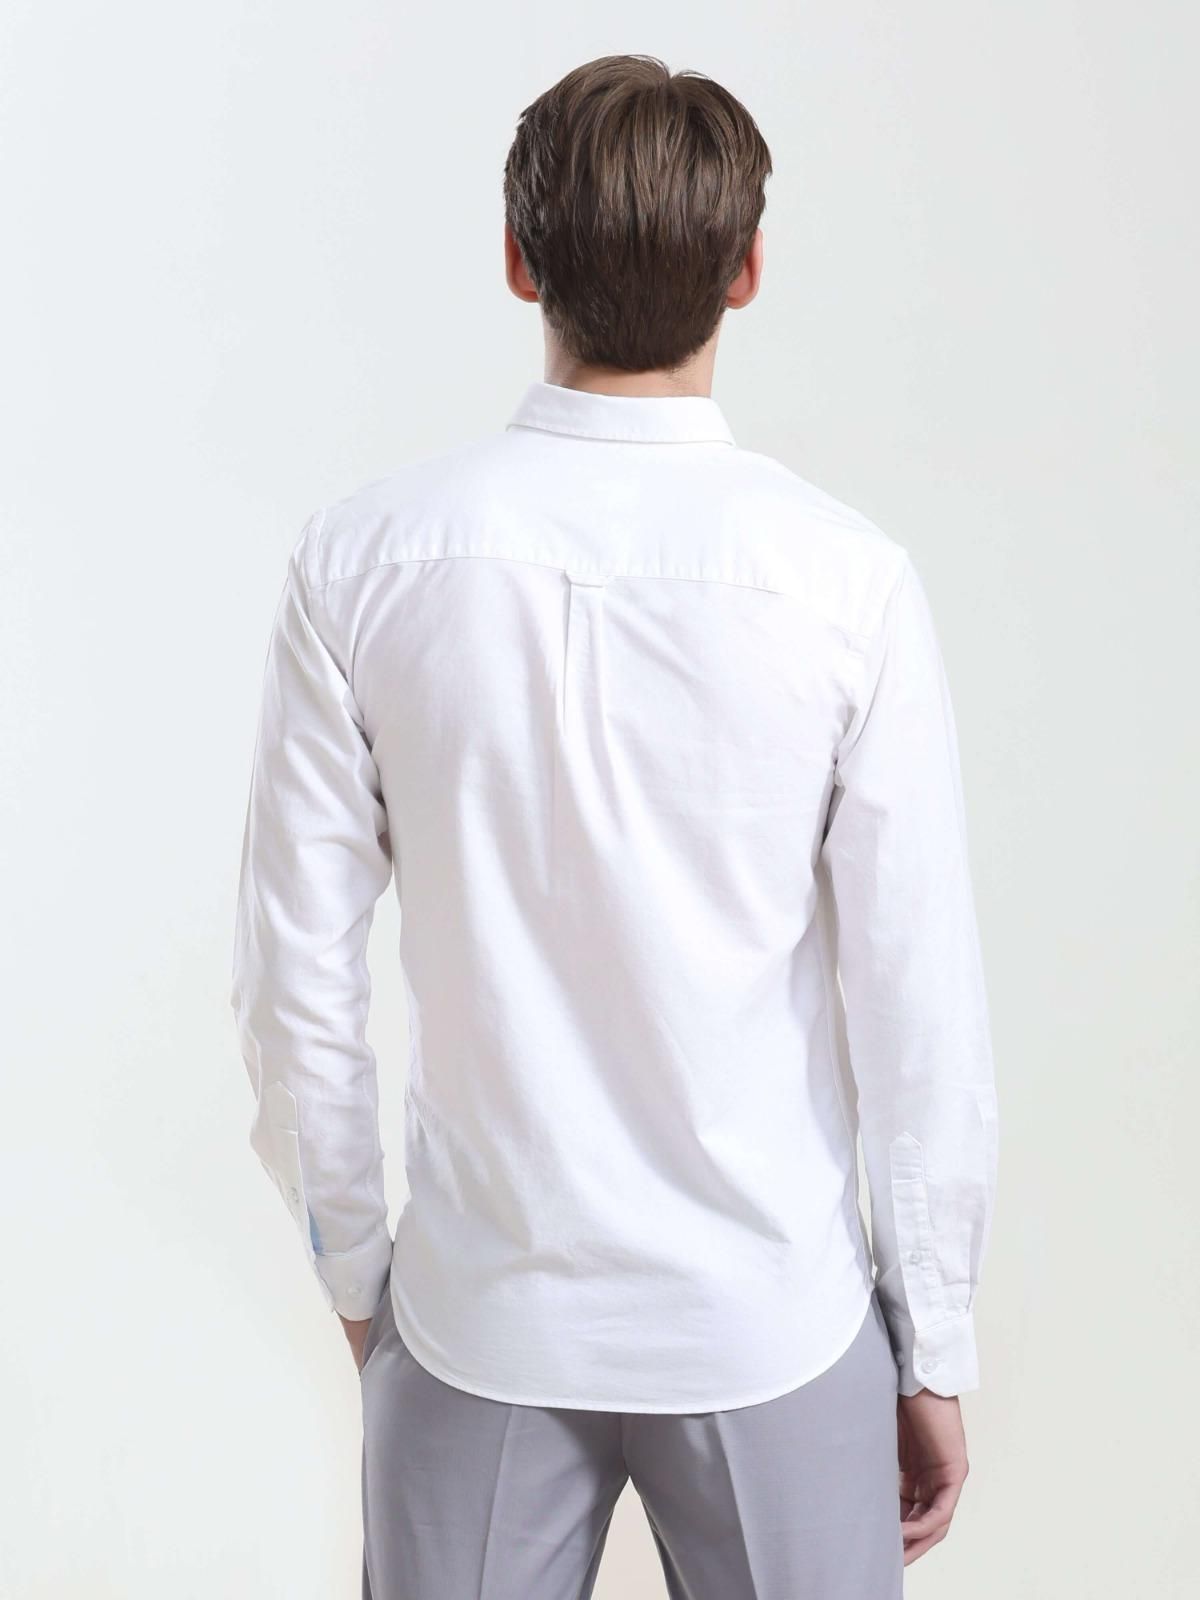 Men's Anti-Stain Anti-Odor Luxury White Cotton Shirt